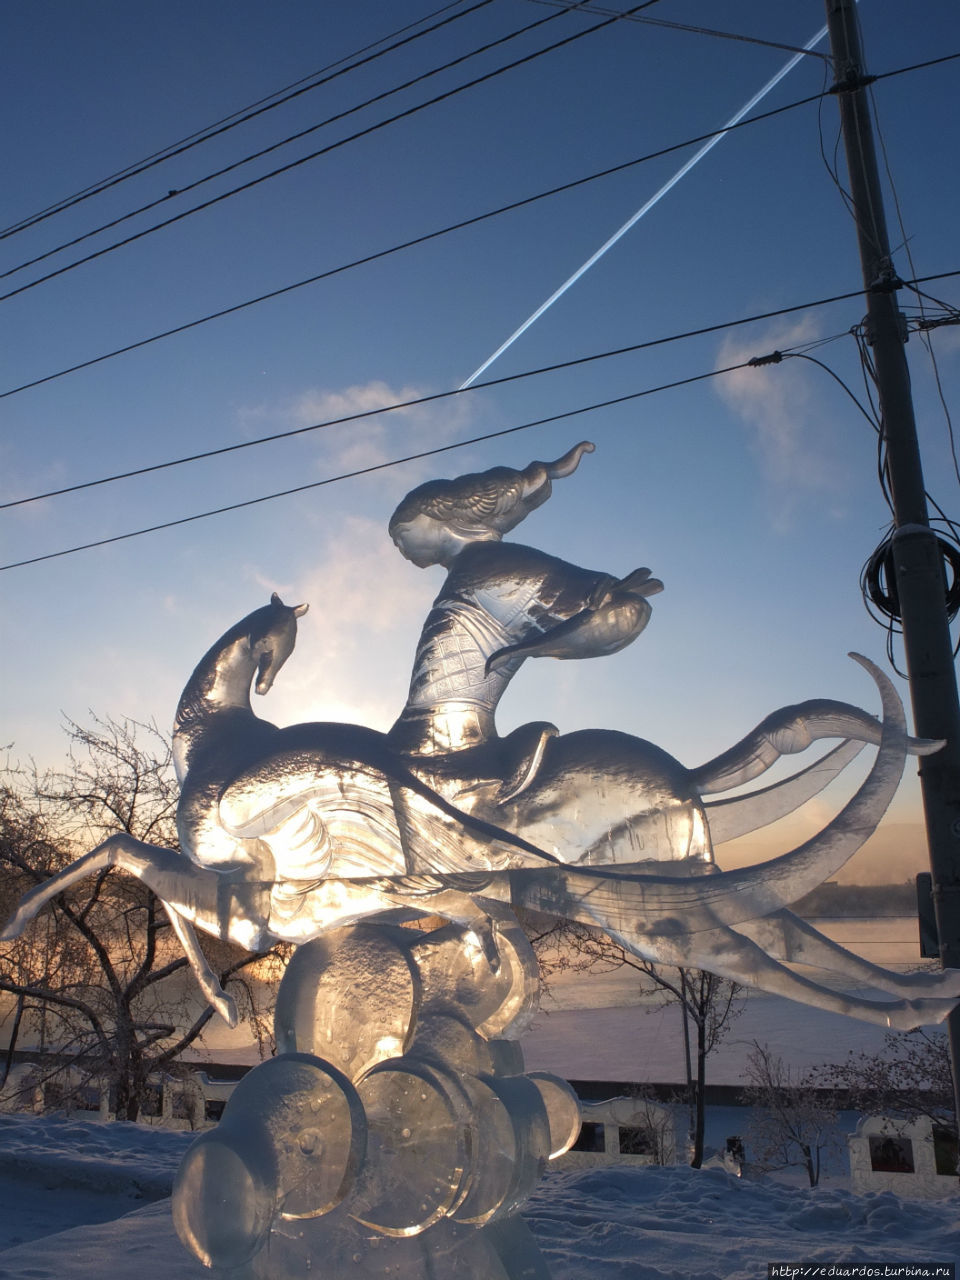 Волшебный лёд Сибири 2016 Красноярск, Россия